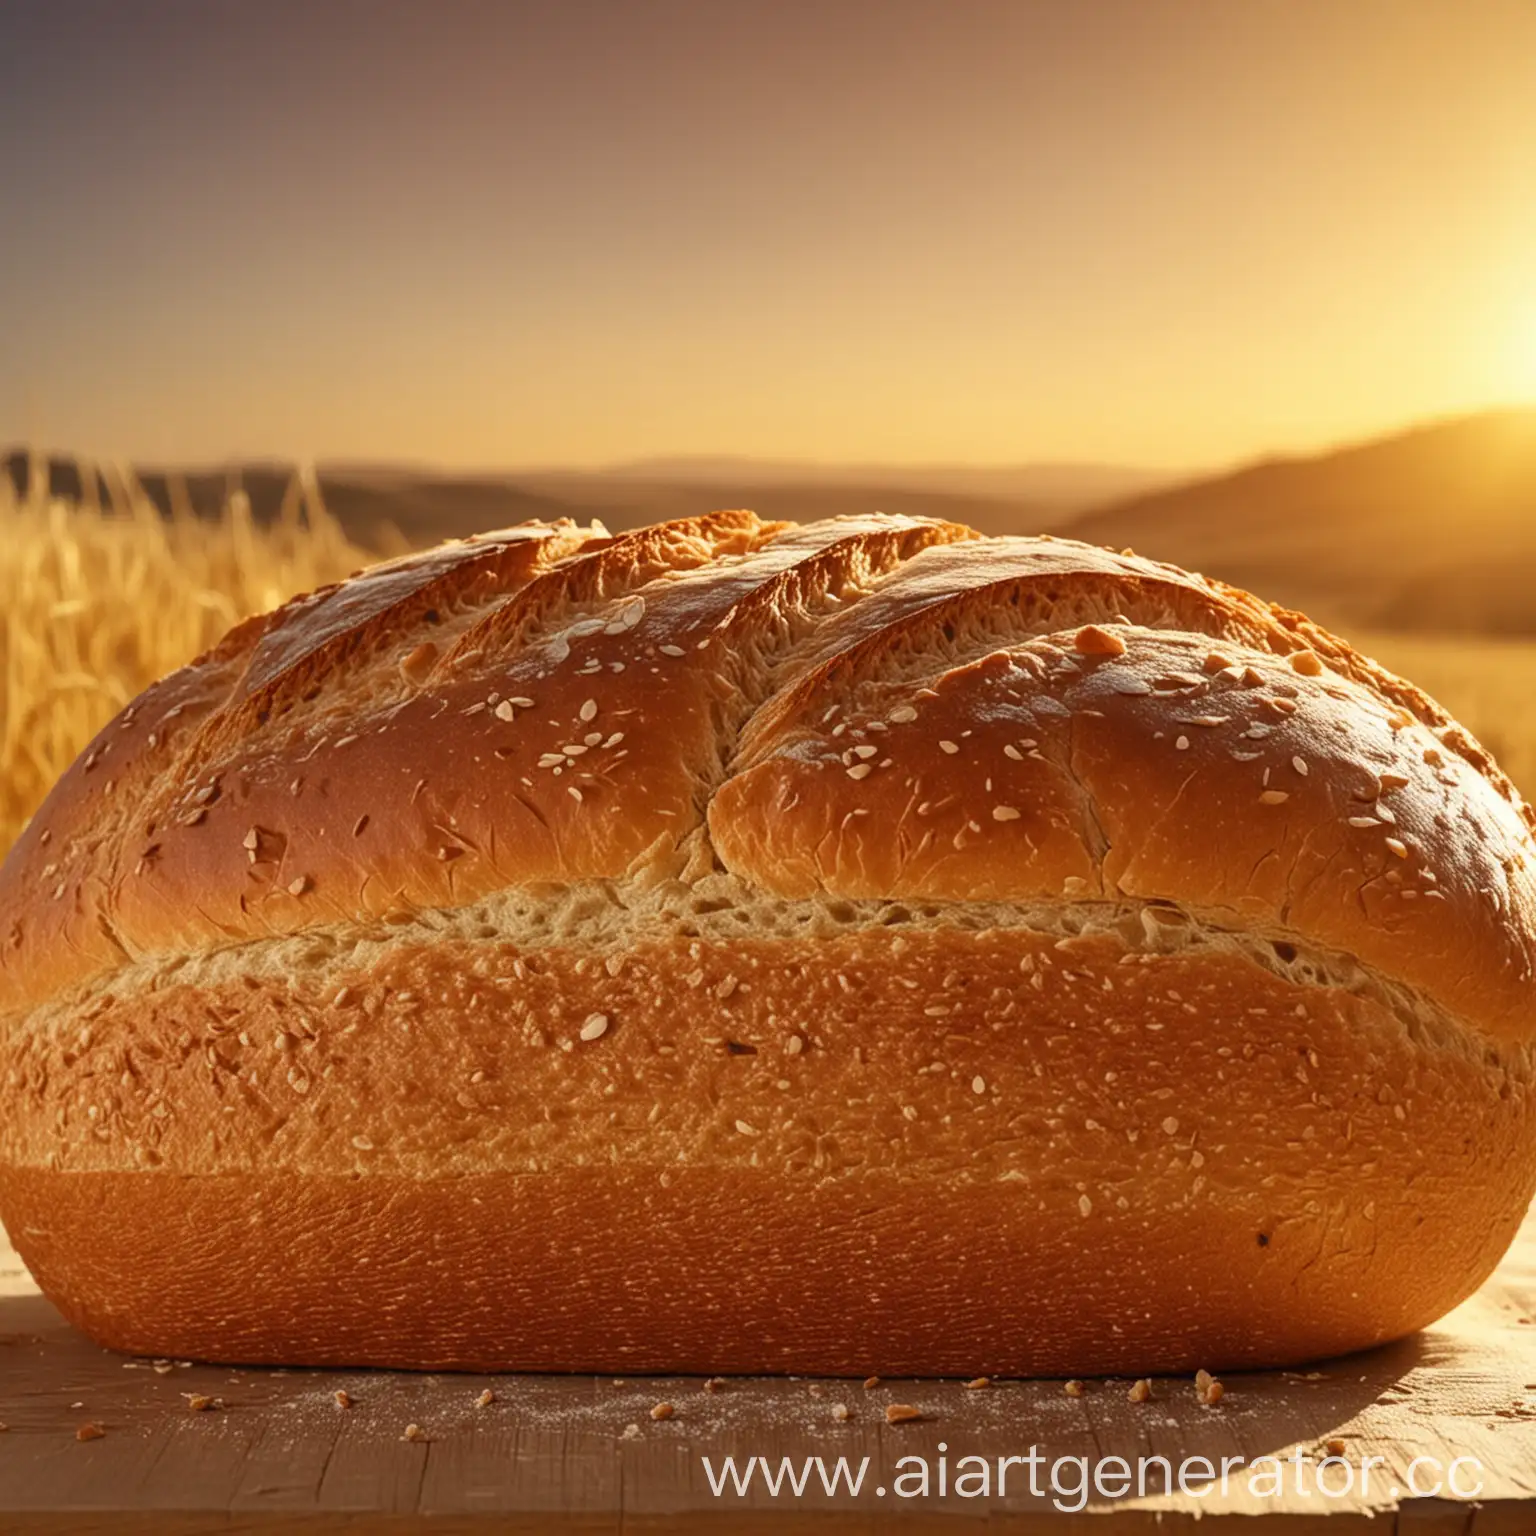 Golden-Sunrise-Over-a-Crunchy-Loaf-of-Freshly-Baked-Bread